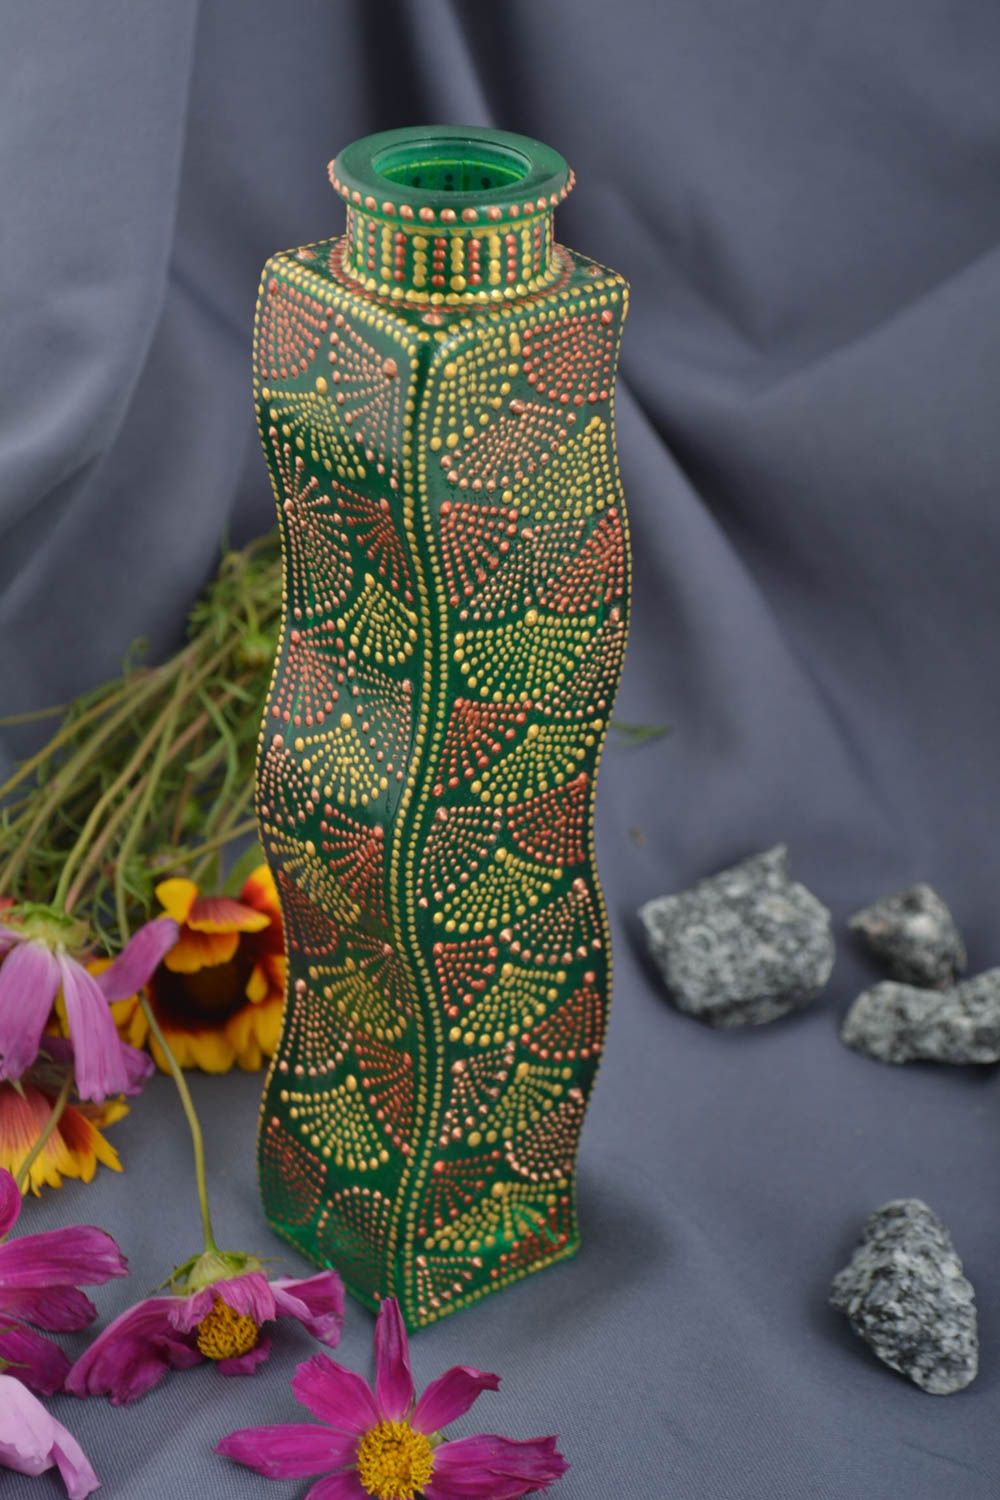 Стеклянная ваза ручной работы ваза для цветов ваза в интерьере 300 мл зеленая фото 1